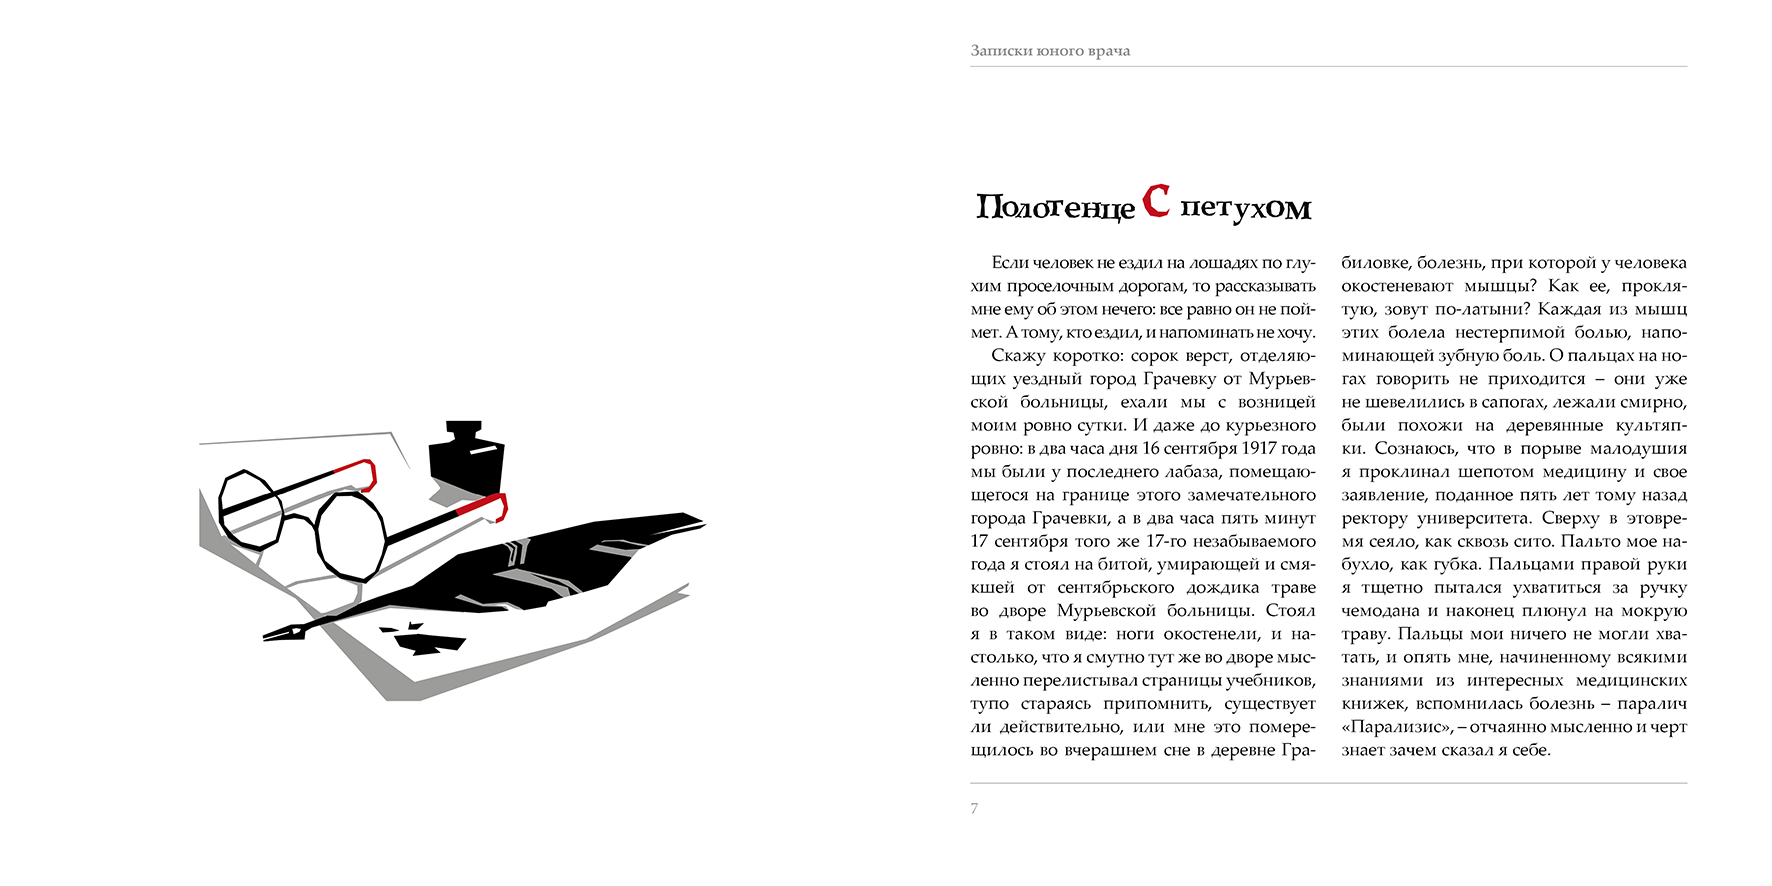 Иллюстрации Анастасии Гринченко к «Запискам юного врача»